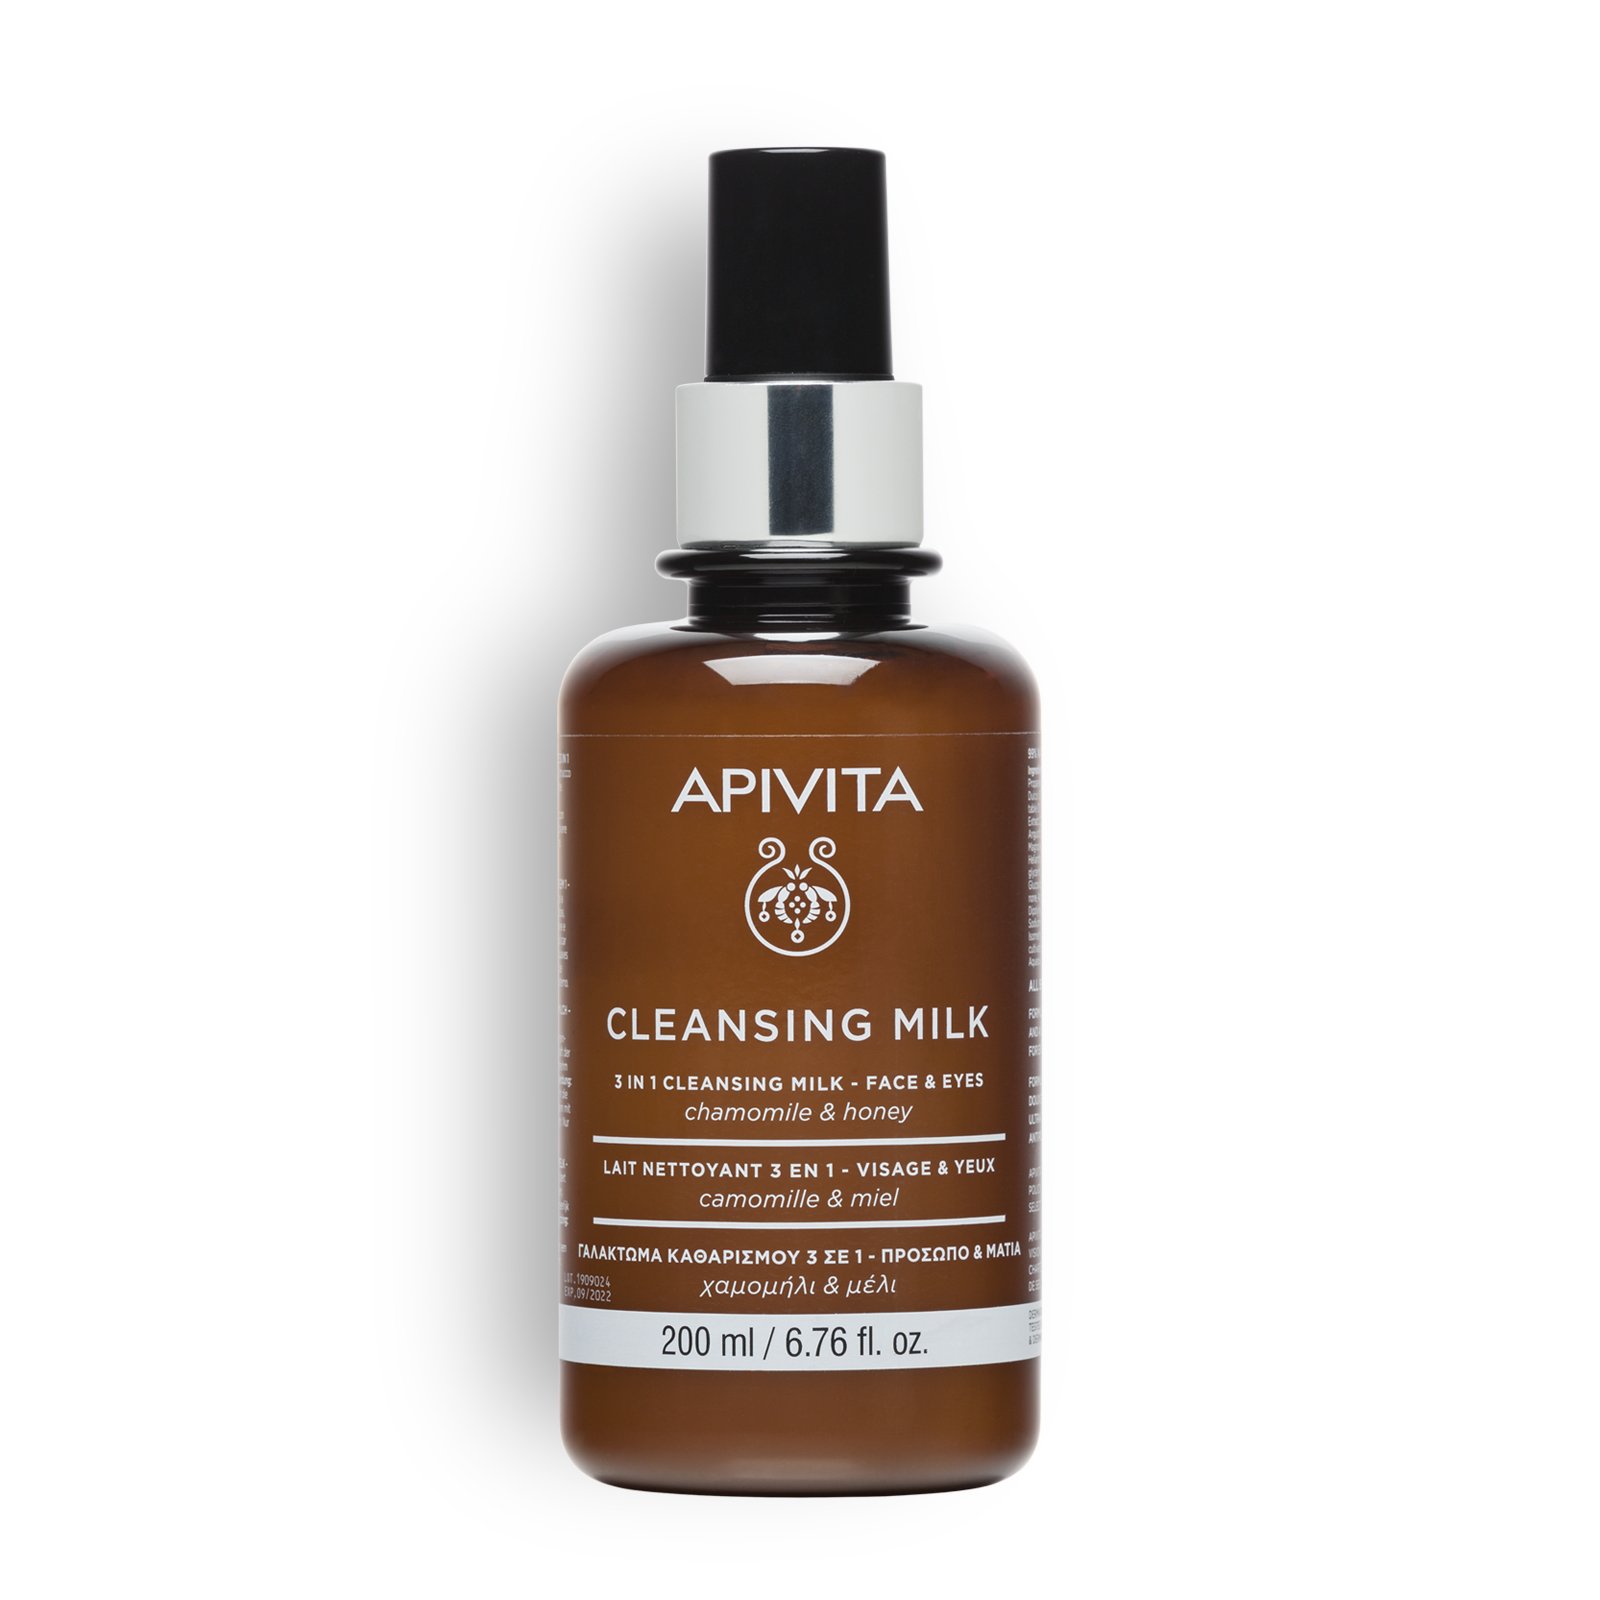 Apivita 3 in 1 Cleansing Milk Face & Eyes 